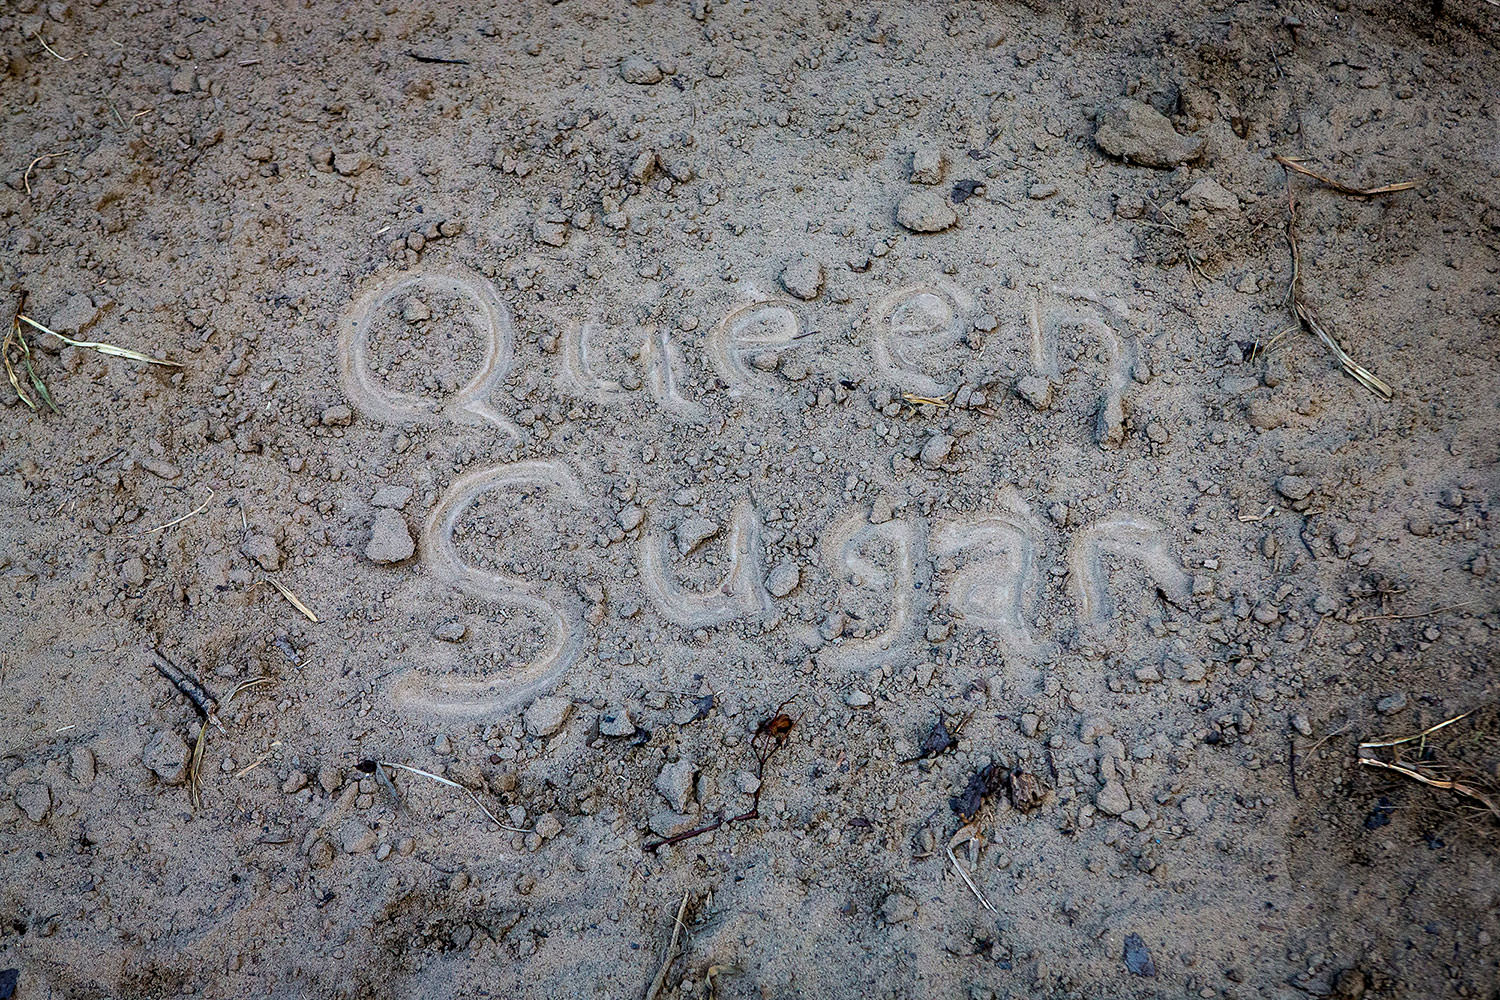 Queen Sugar written in dirt